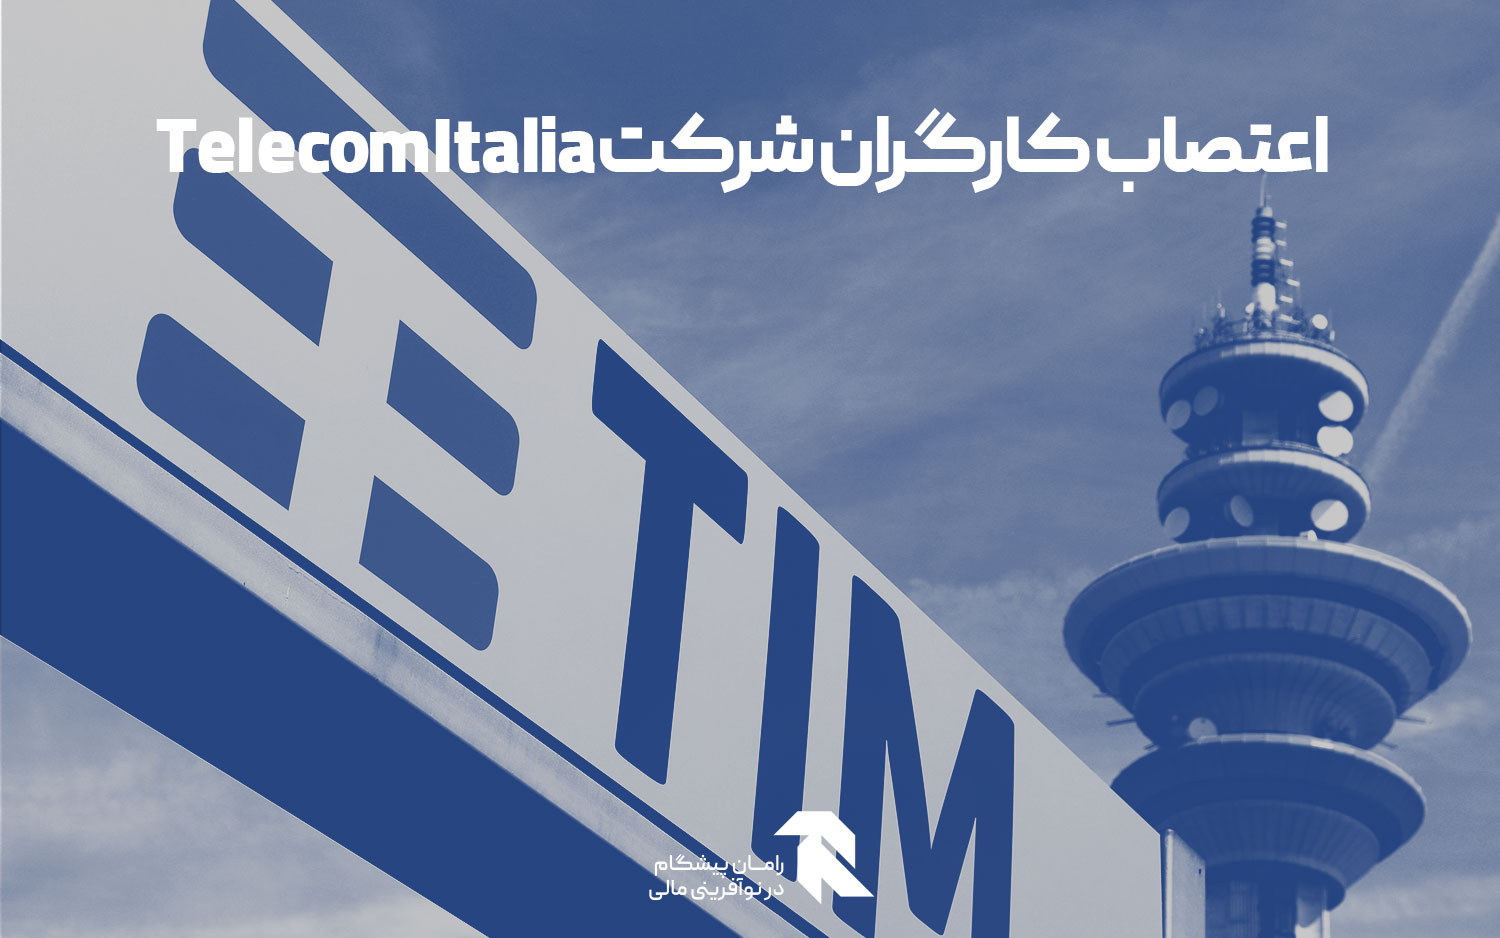 اعتصاب کارگران شرکت Telecom Italia